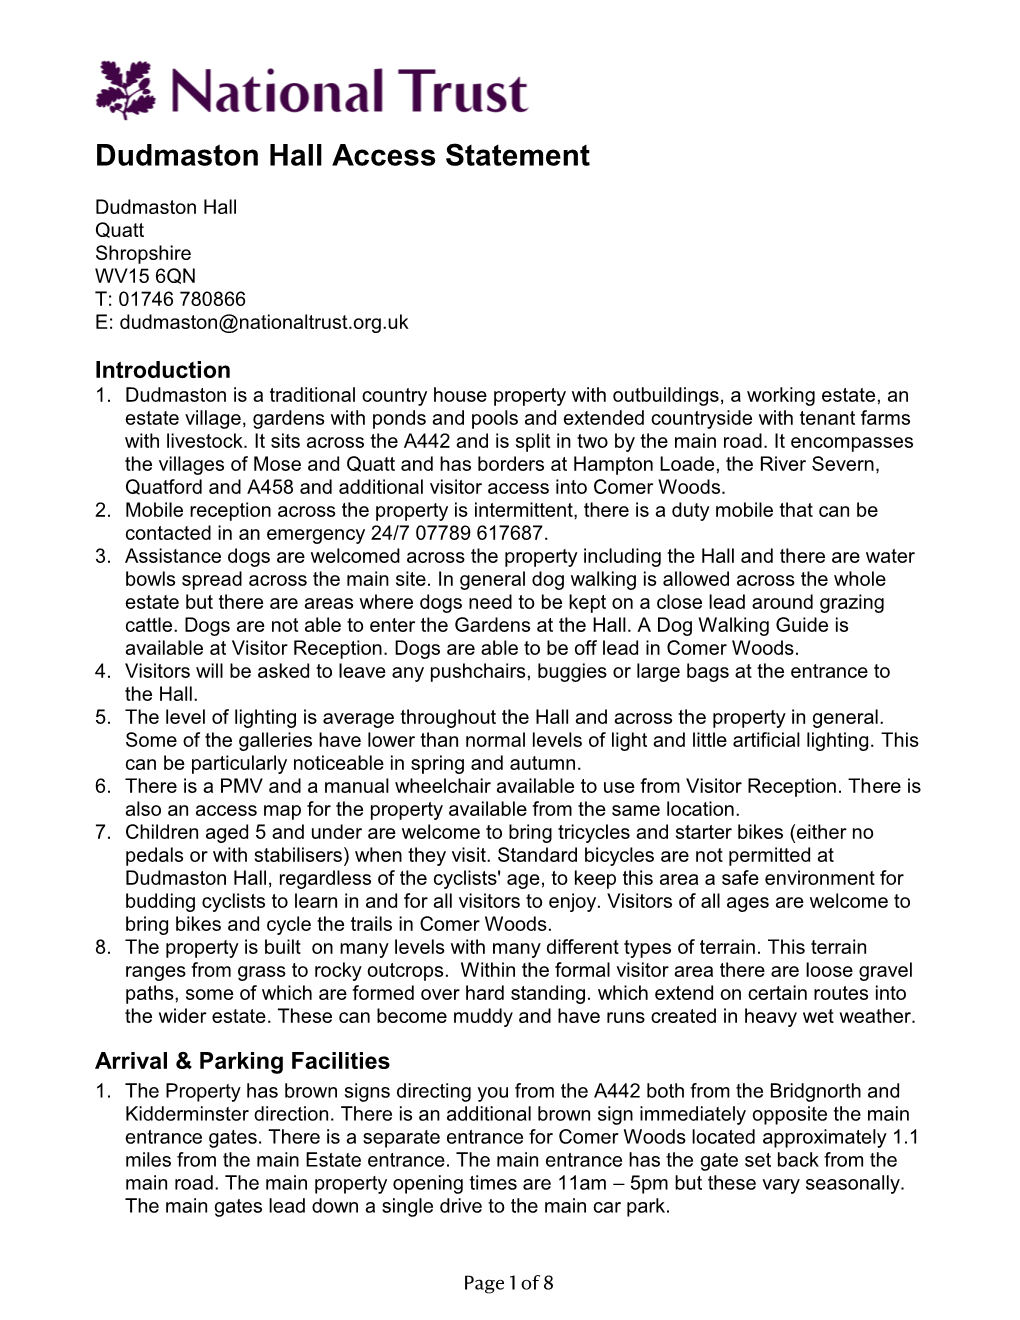 Dudmaston Hall Access Statement